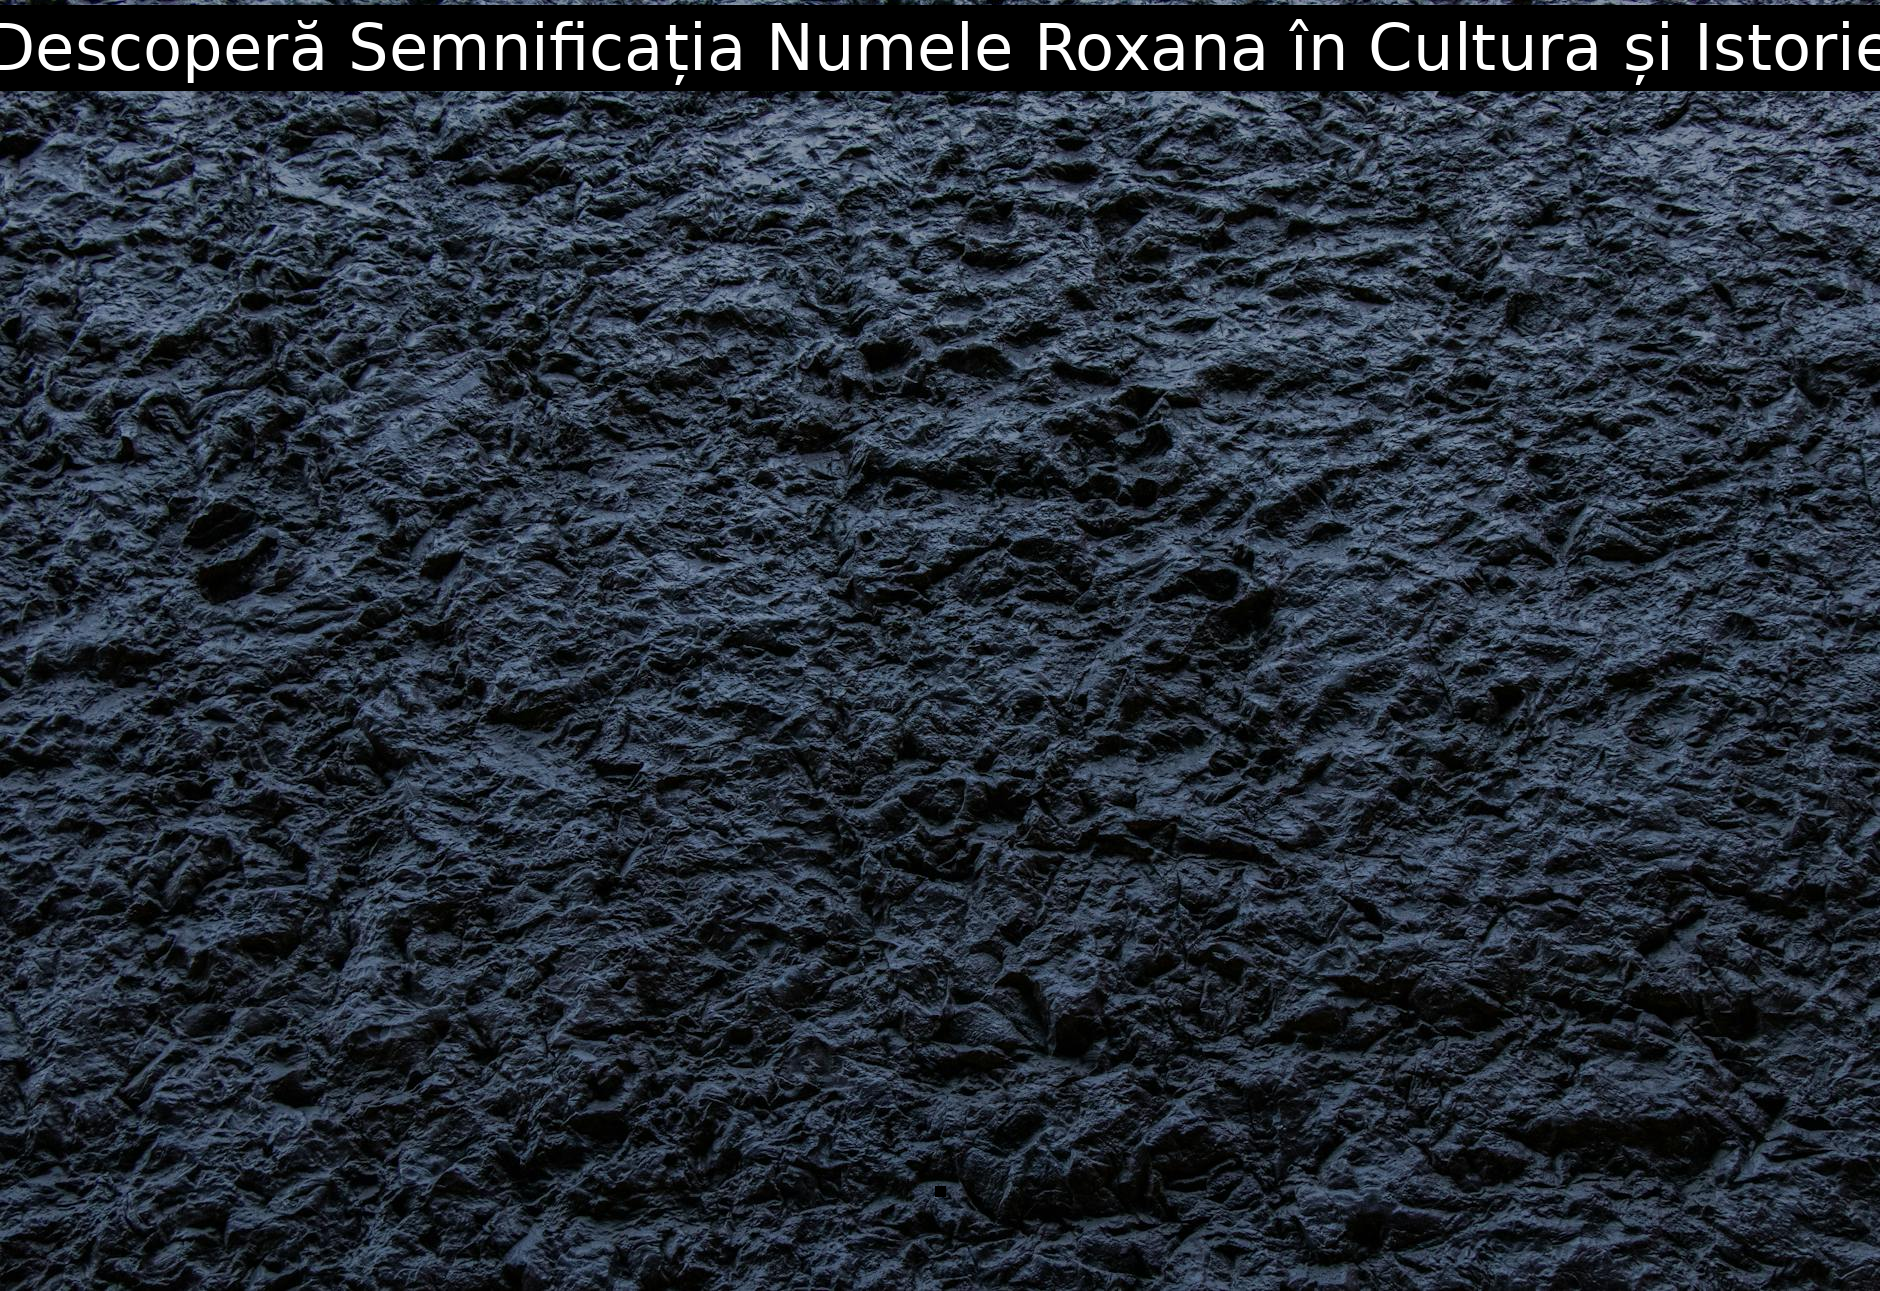 Descoperă Semnificația Numele Roxana în Cultura și Istorie